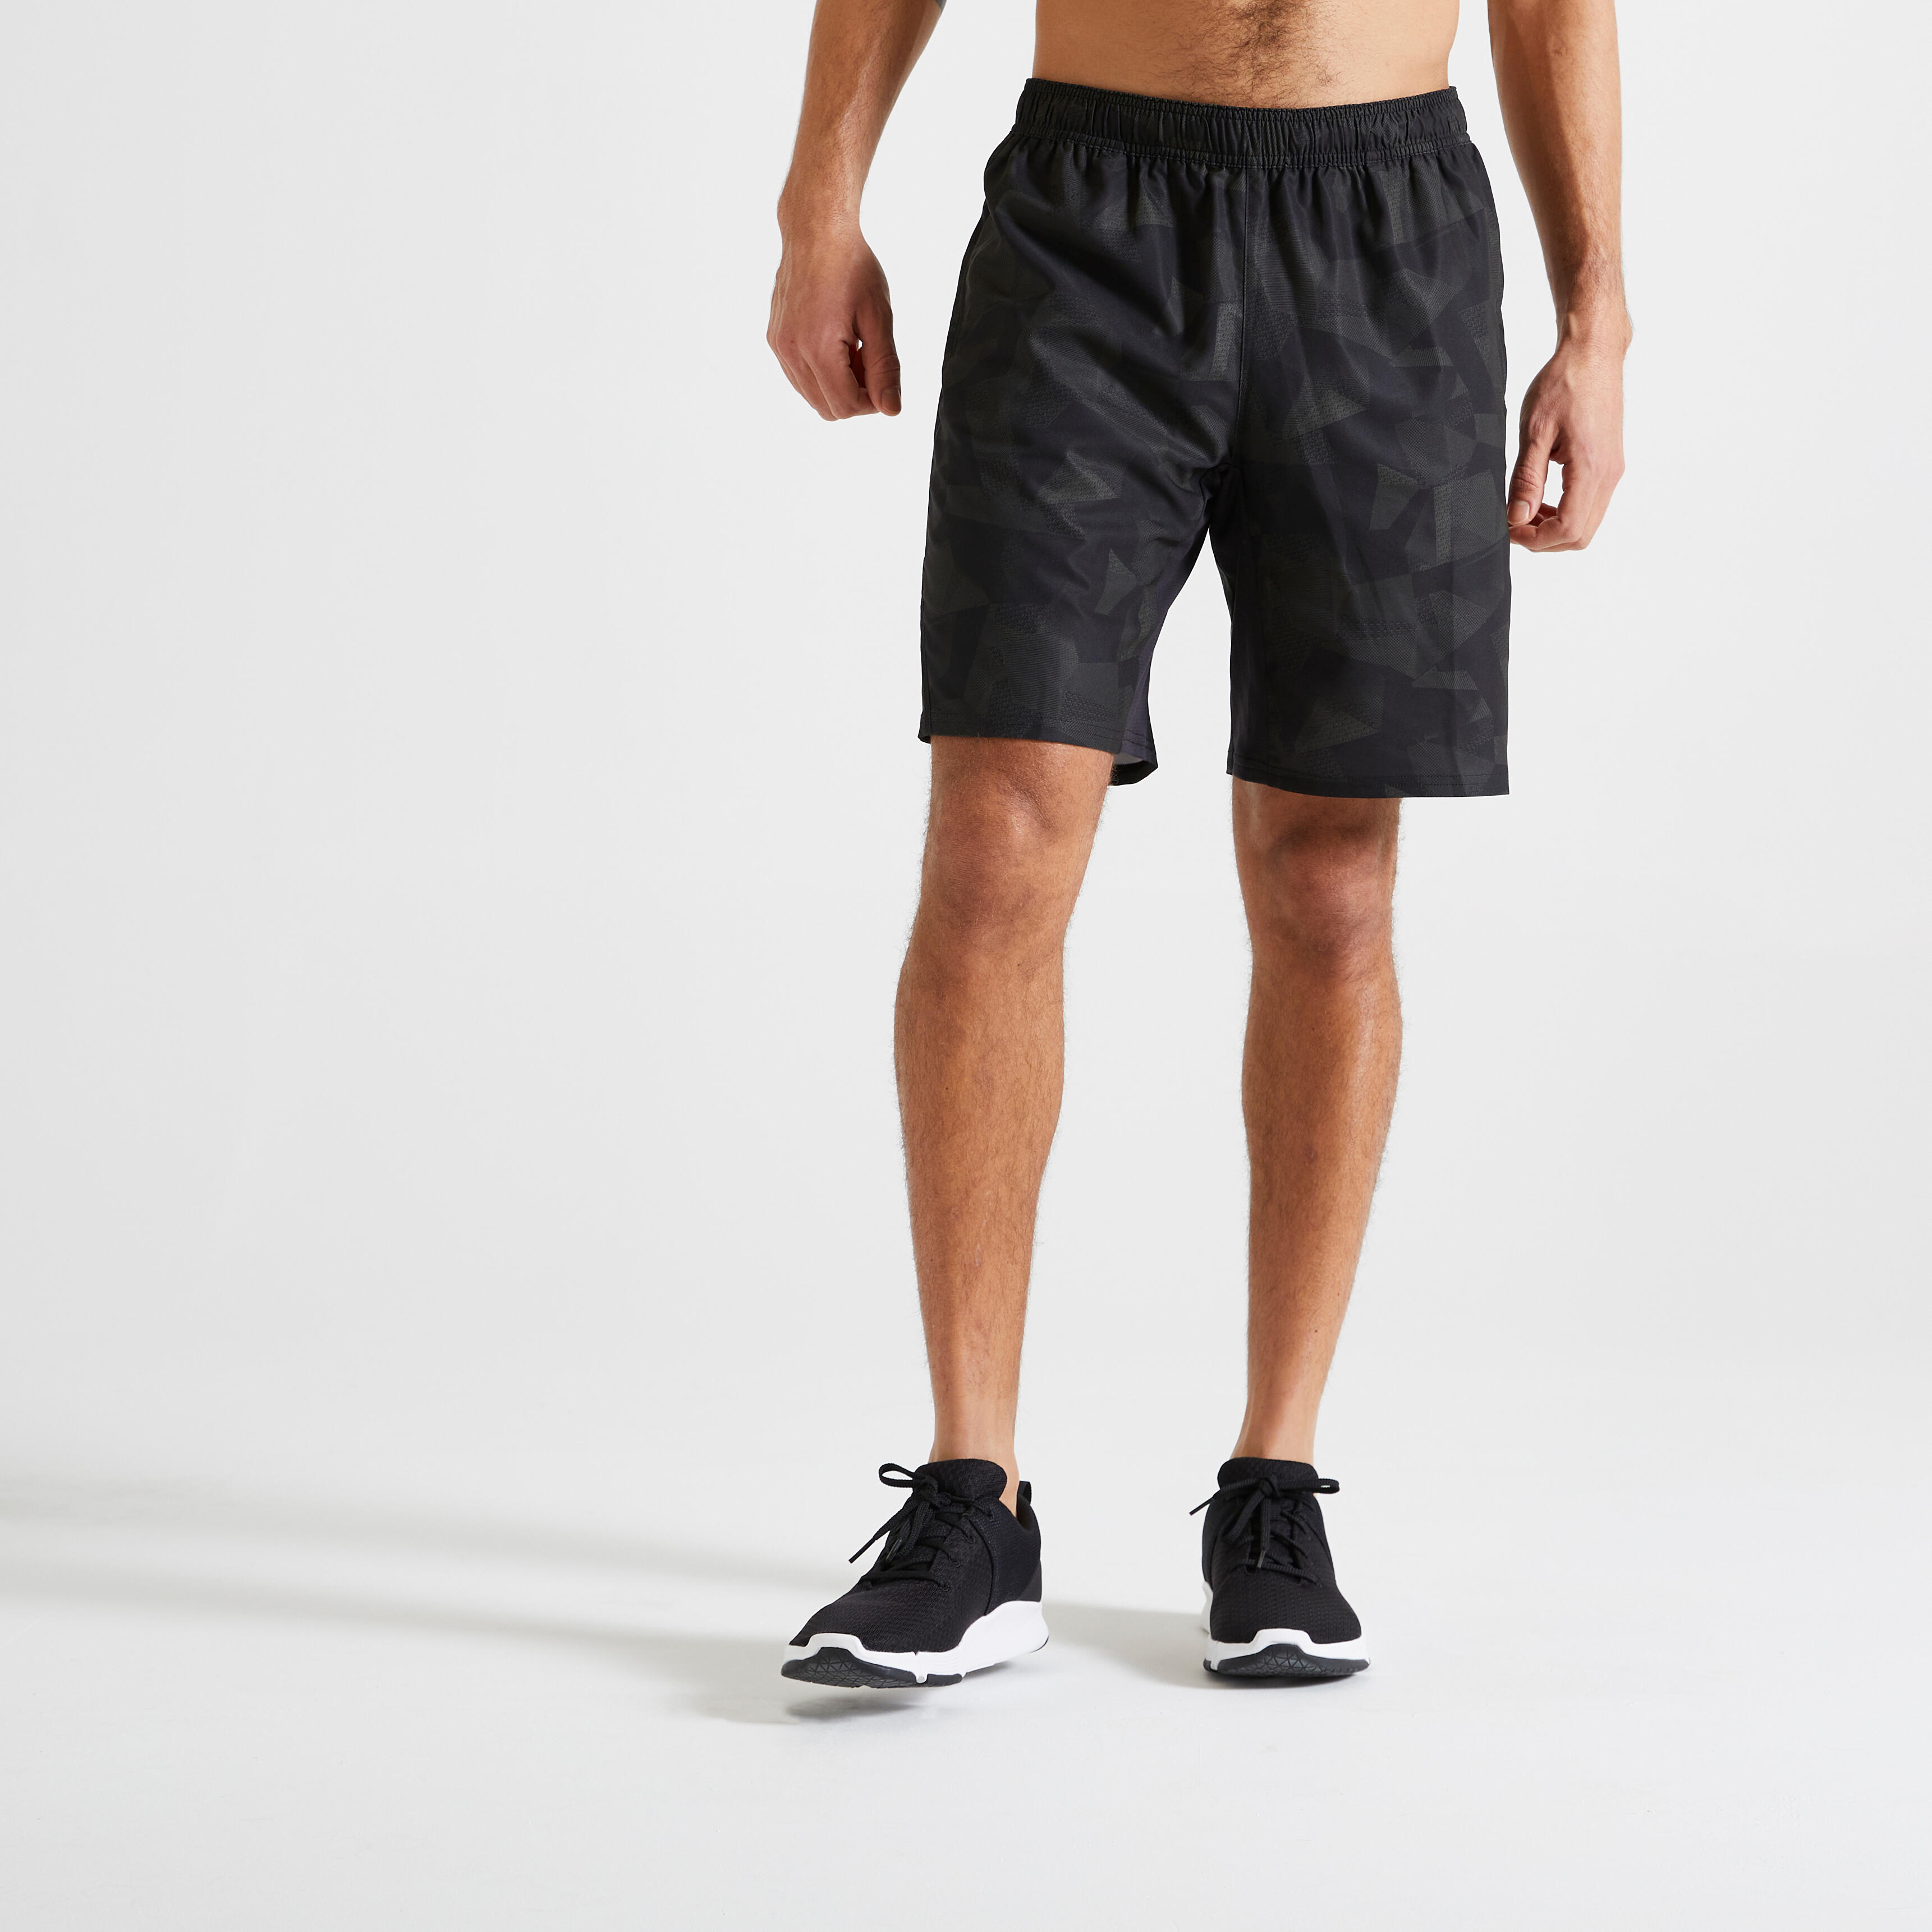 Pantalon scurt 120 Fitness cu buzunare și fermoar kaki Bărbați La Oferta Online decathlon imagine La Oferta Online